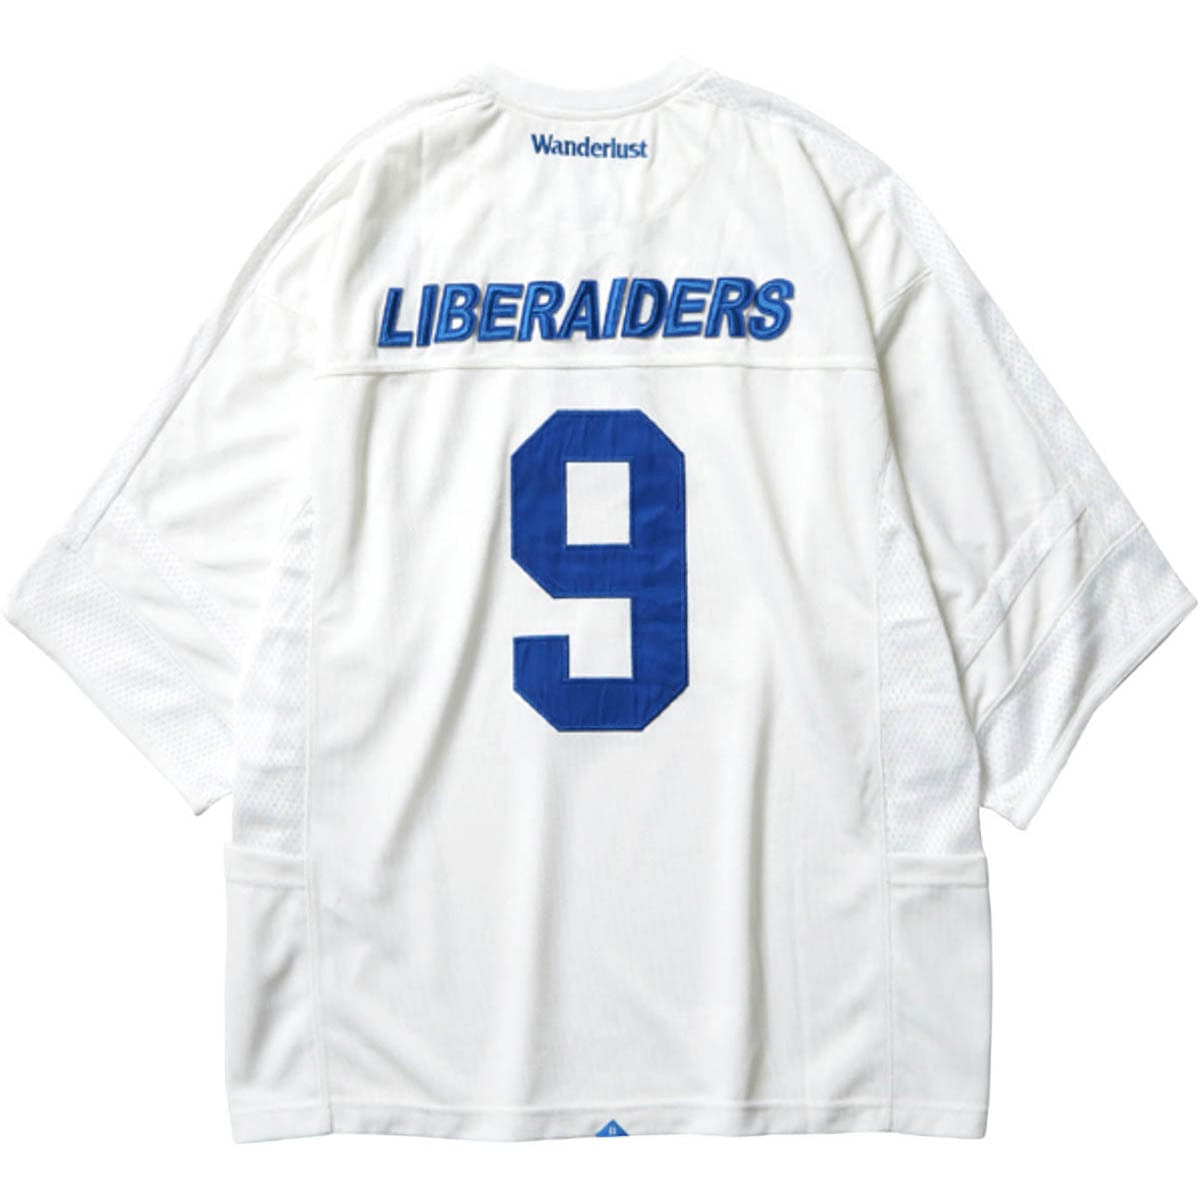 Liberaiders T-Shirts LIBERAIDERS HOCKEY SHIRT